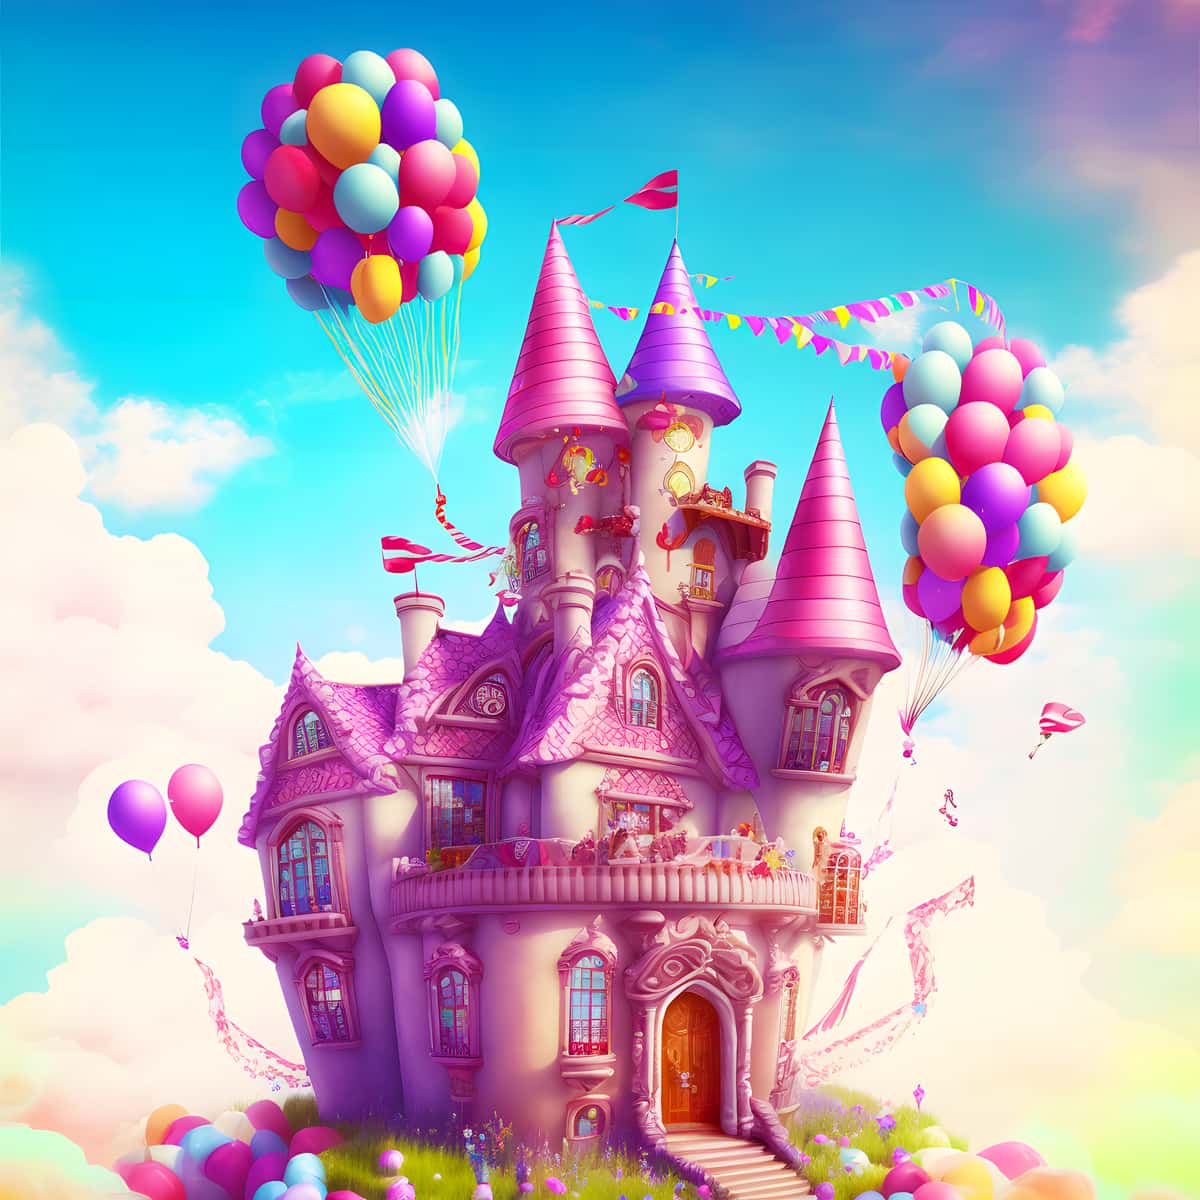 AB Diamond Painting - Märchenschloss mit Luftballons - gedruckt in Ultra-HD - AB Diamond, Fantasy, Kinder, Märchen, Neu eingetroffen, Quadratisch